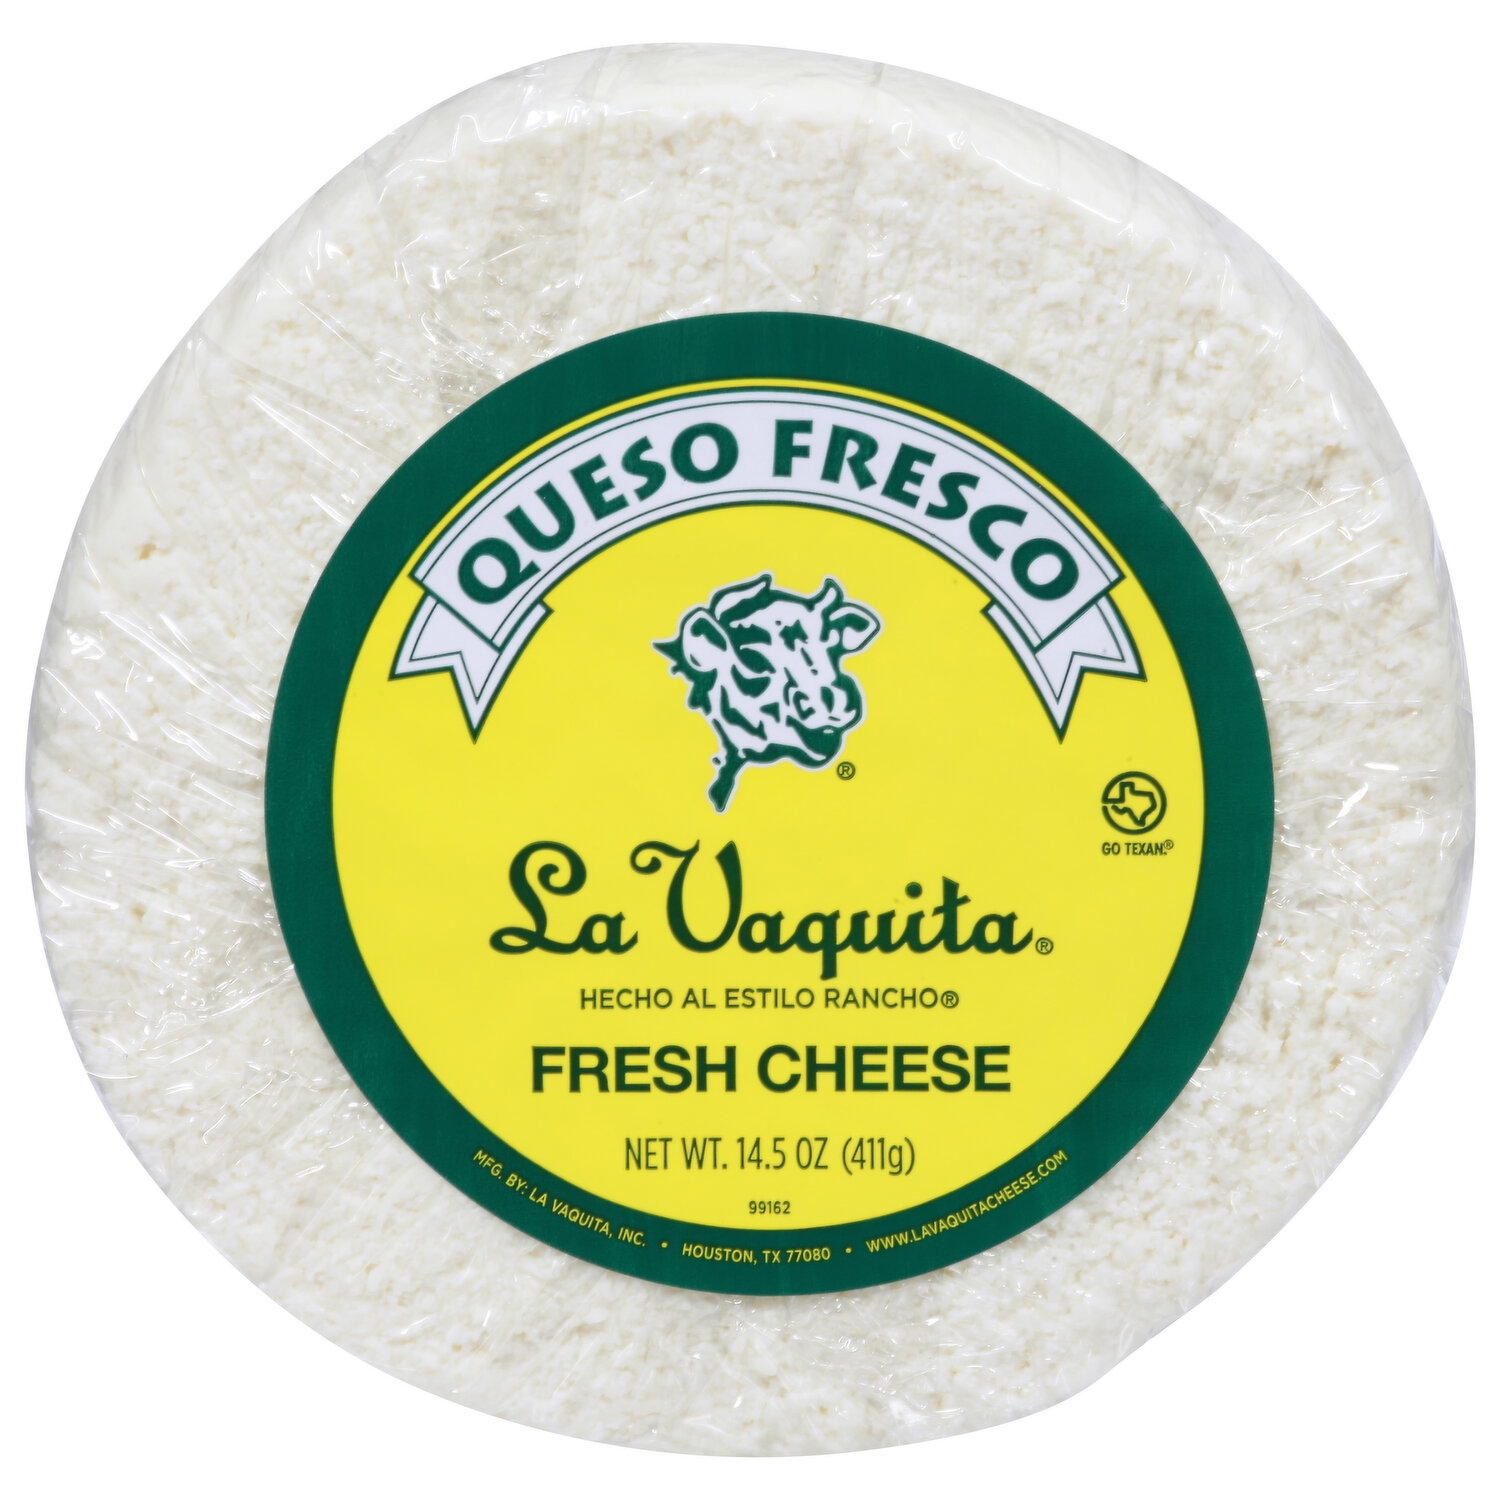 Cacique Cheese, Part Skim Milk, Cotija - Brookshire's